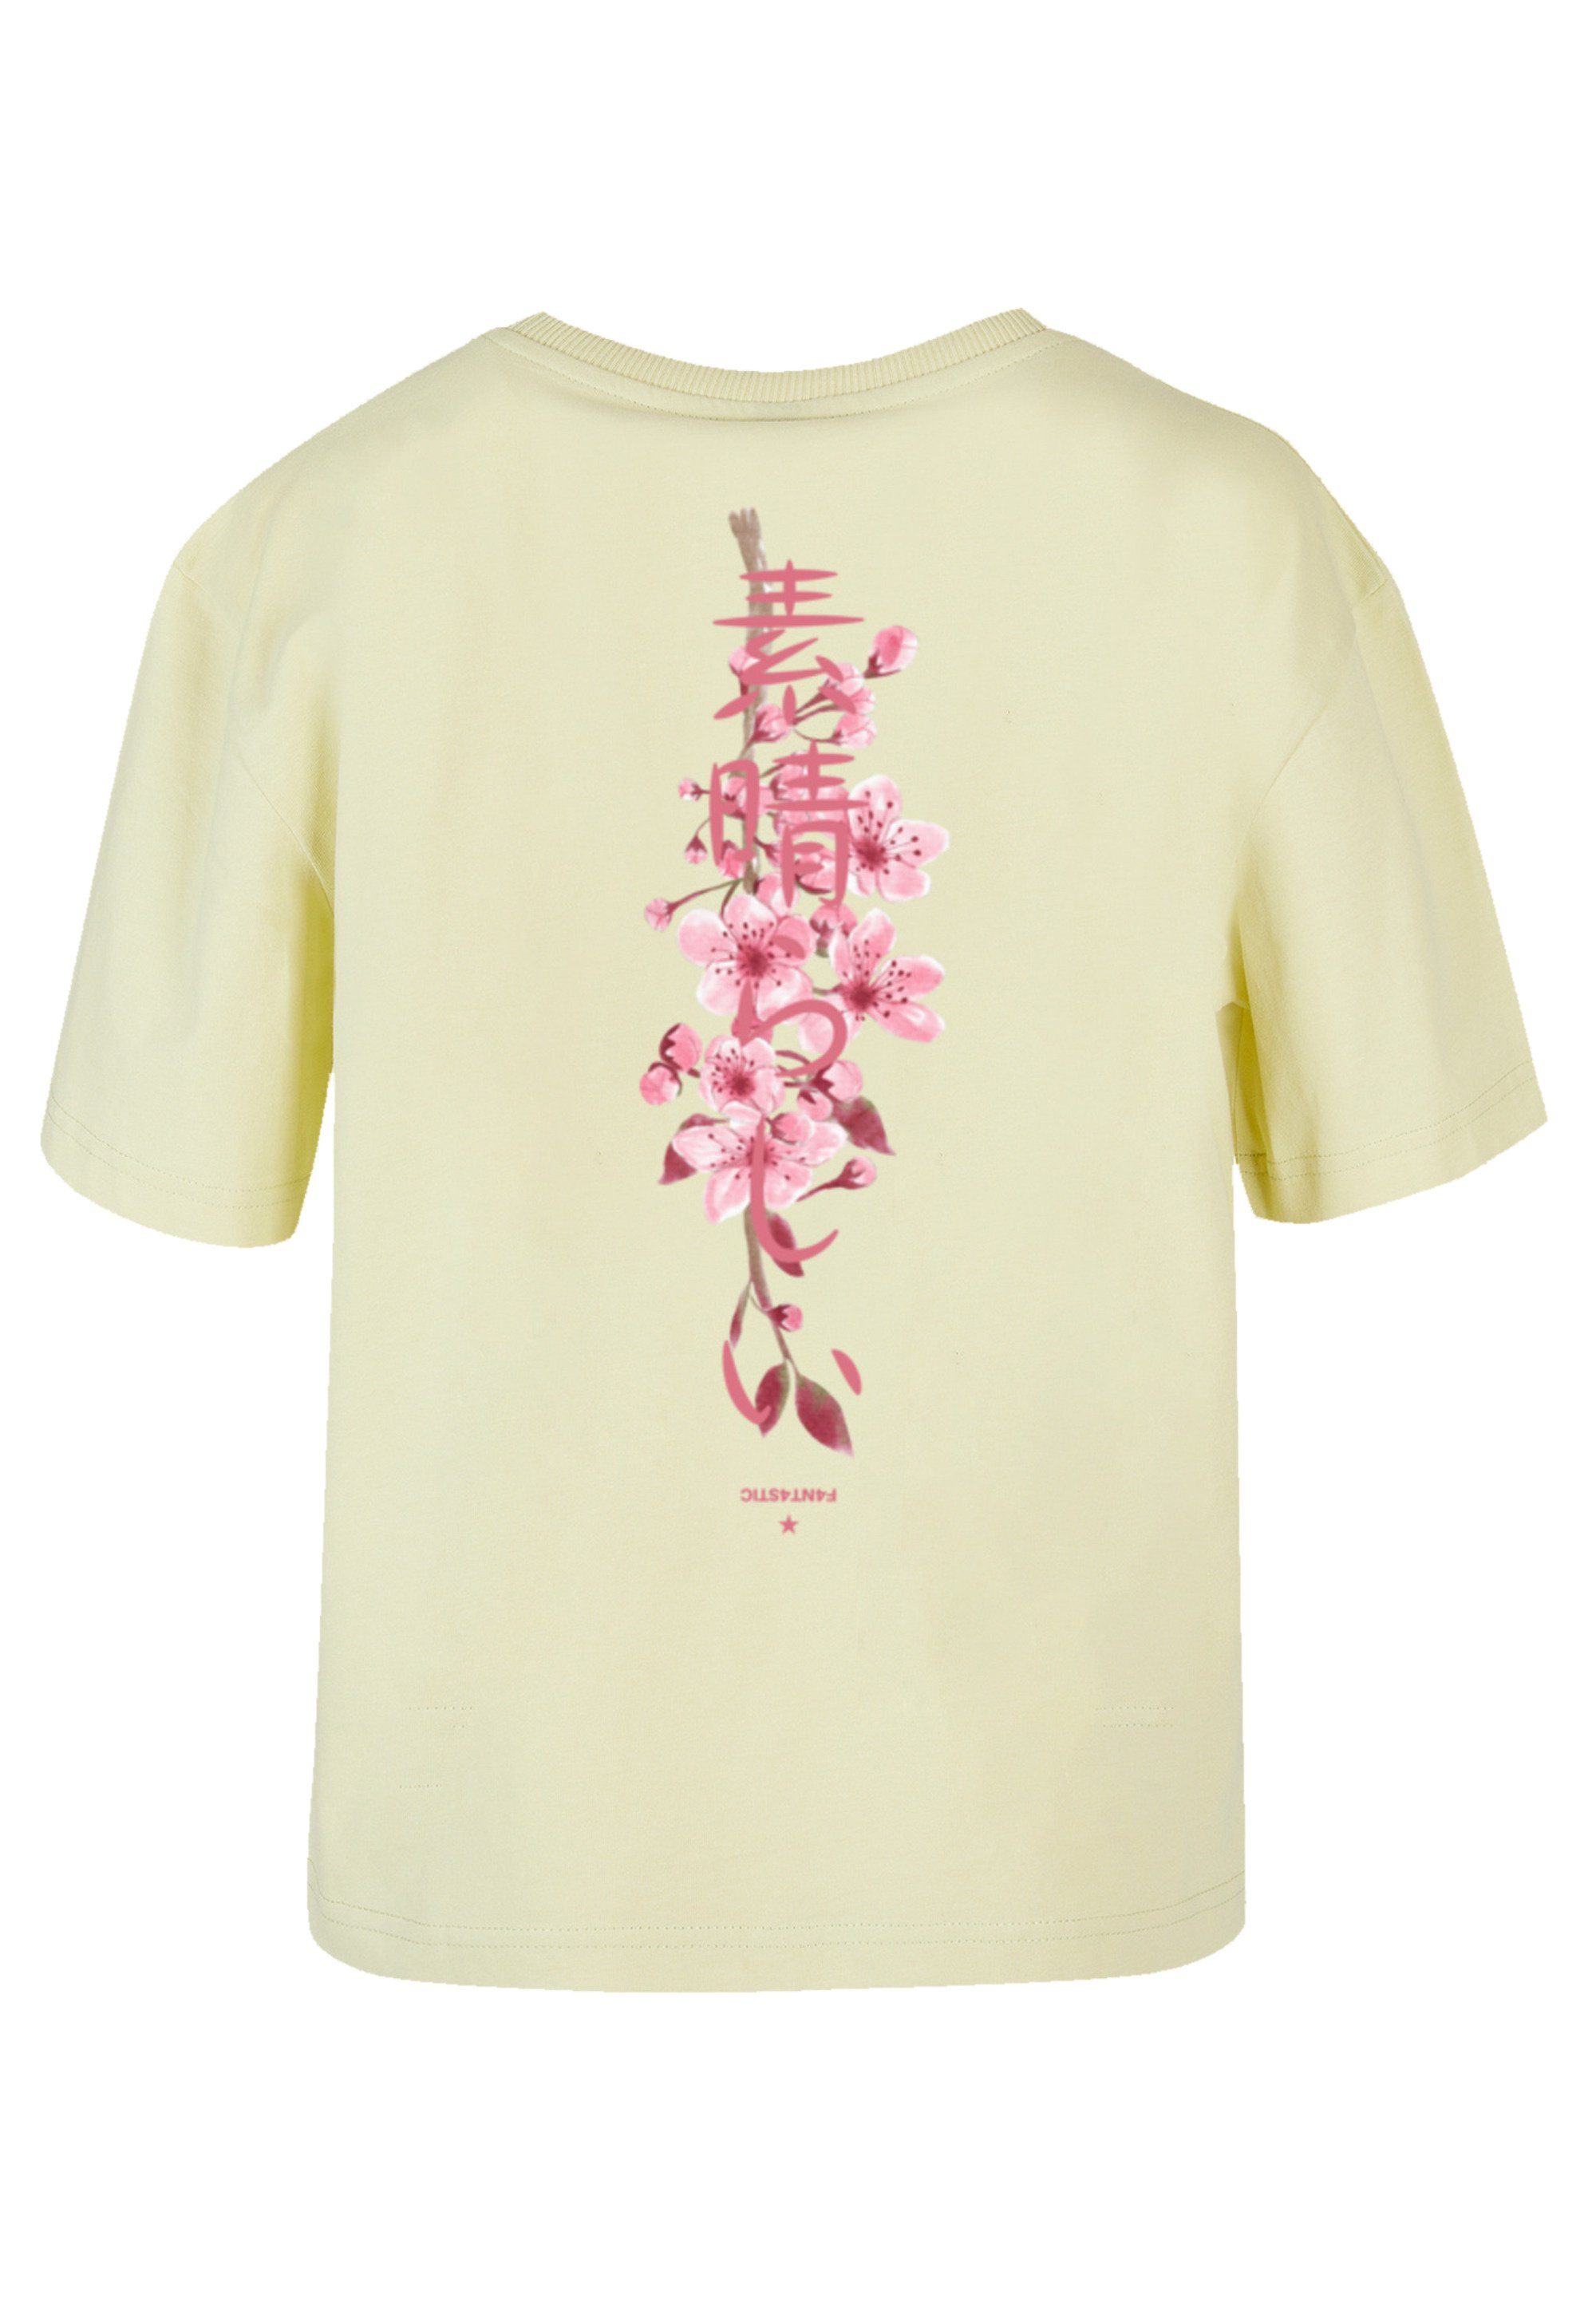 Fällt eine Blossom T-Shirt Größe aus, bestellen kleiner F4NT4STIC weit Cherry Print, bitte